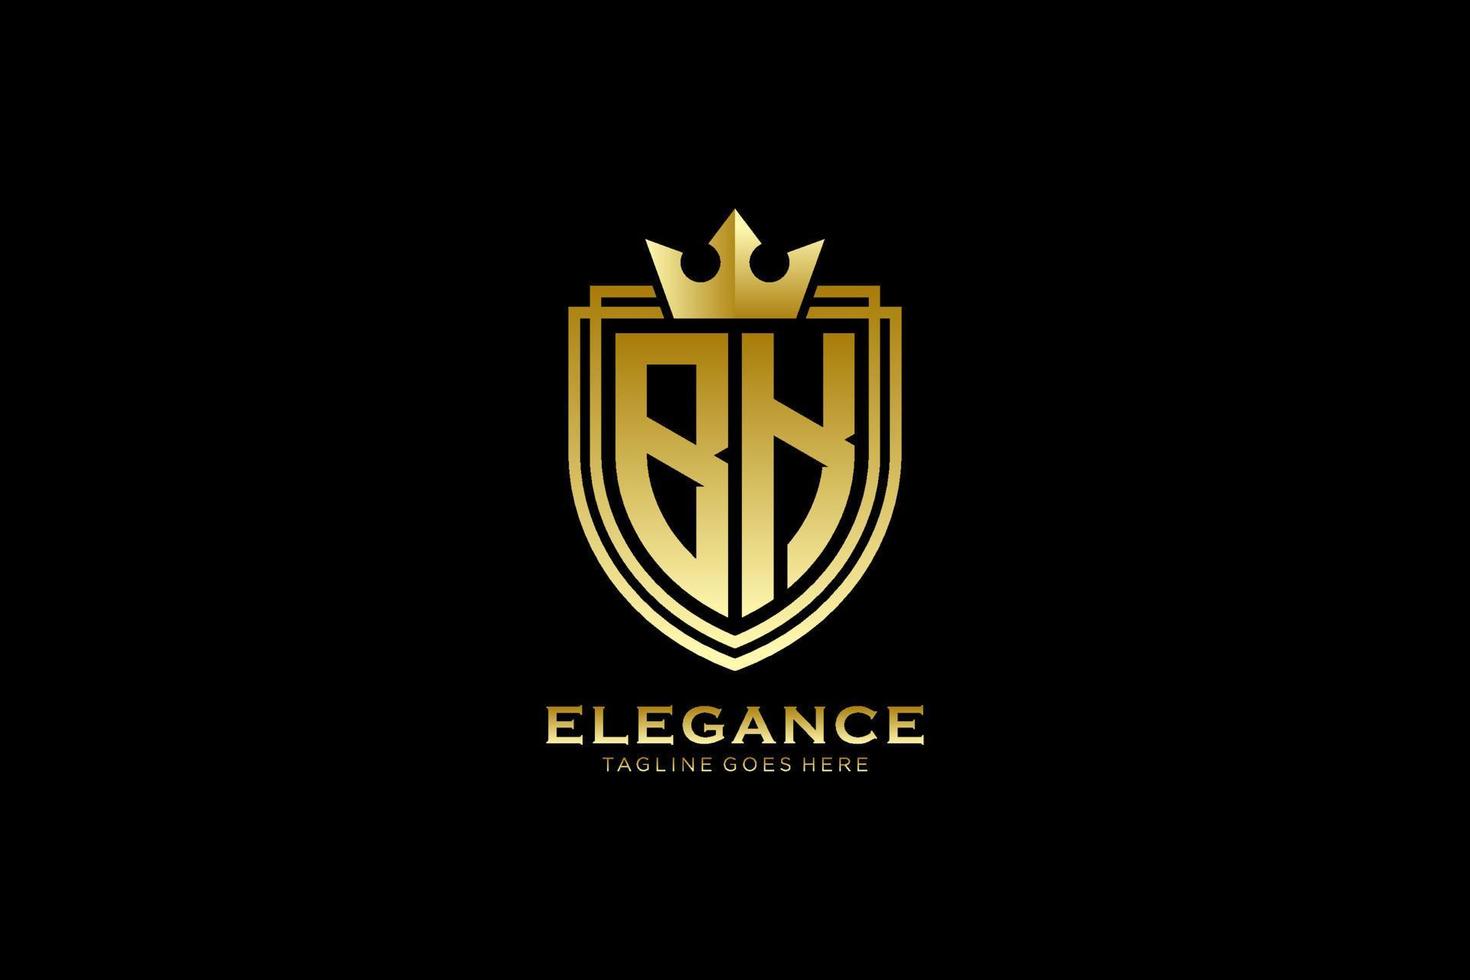 logotipo de monograma de lujo inicial bk elegante o plantilla de placa con pergaminos y corona real - perfecto para proyectos de marca de lujo vector